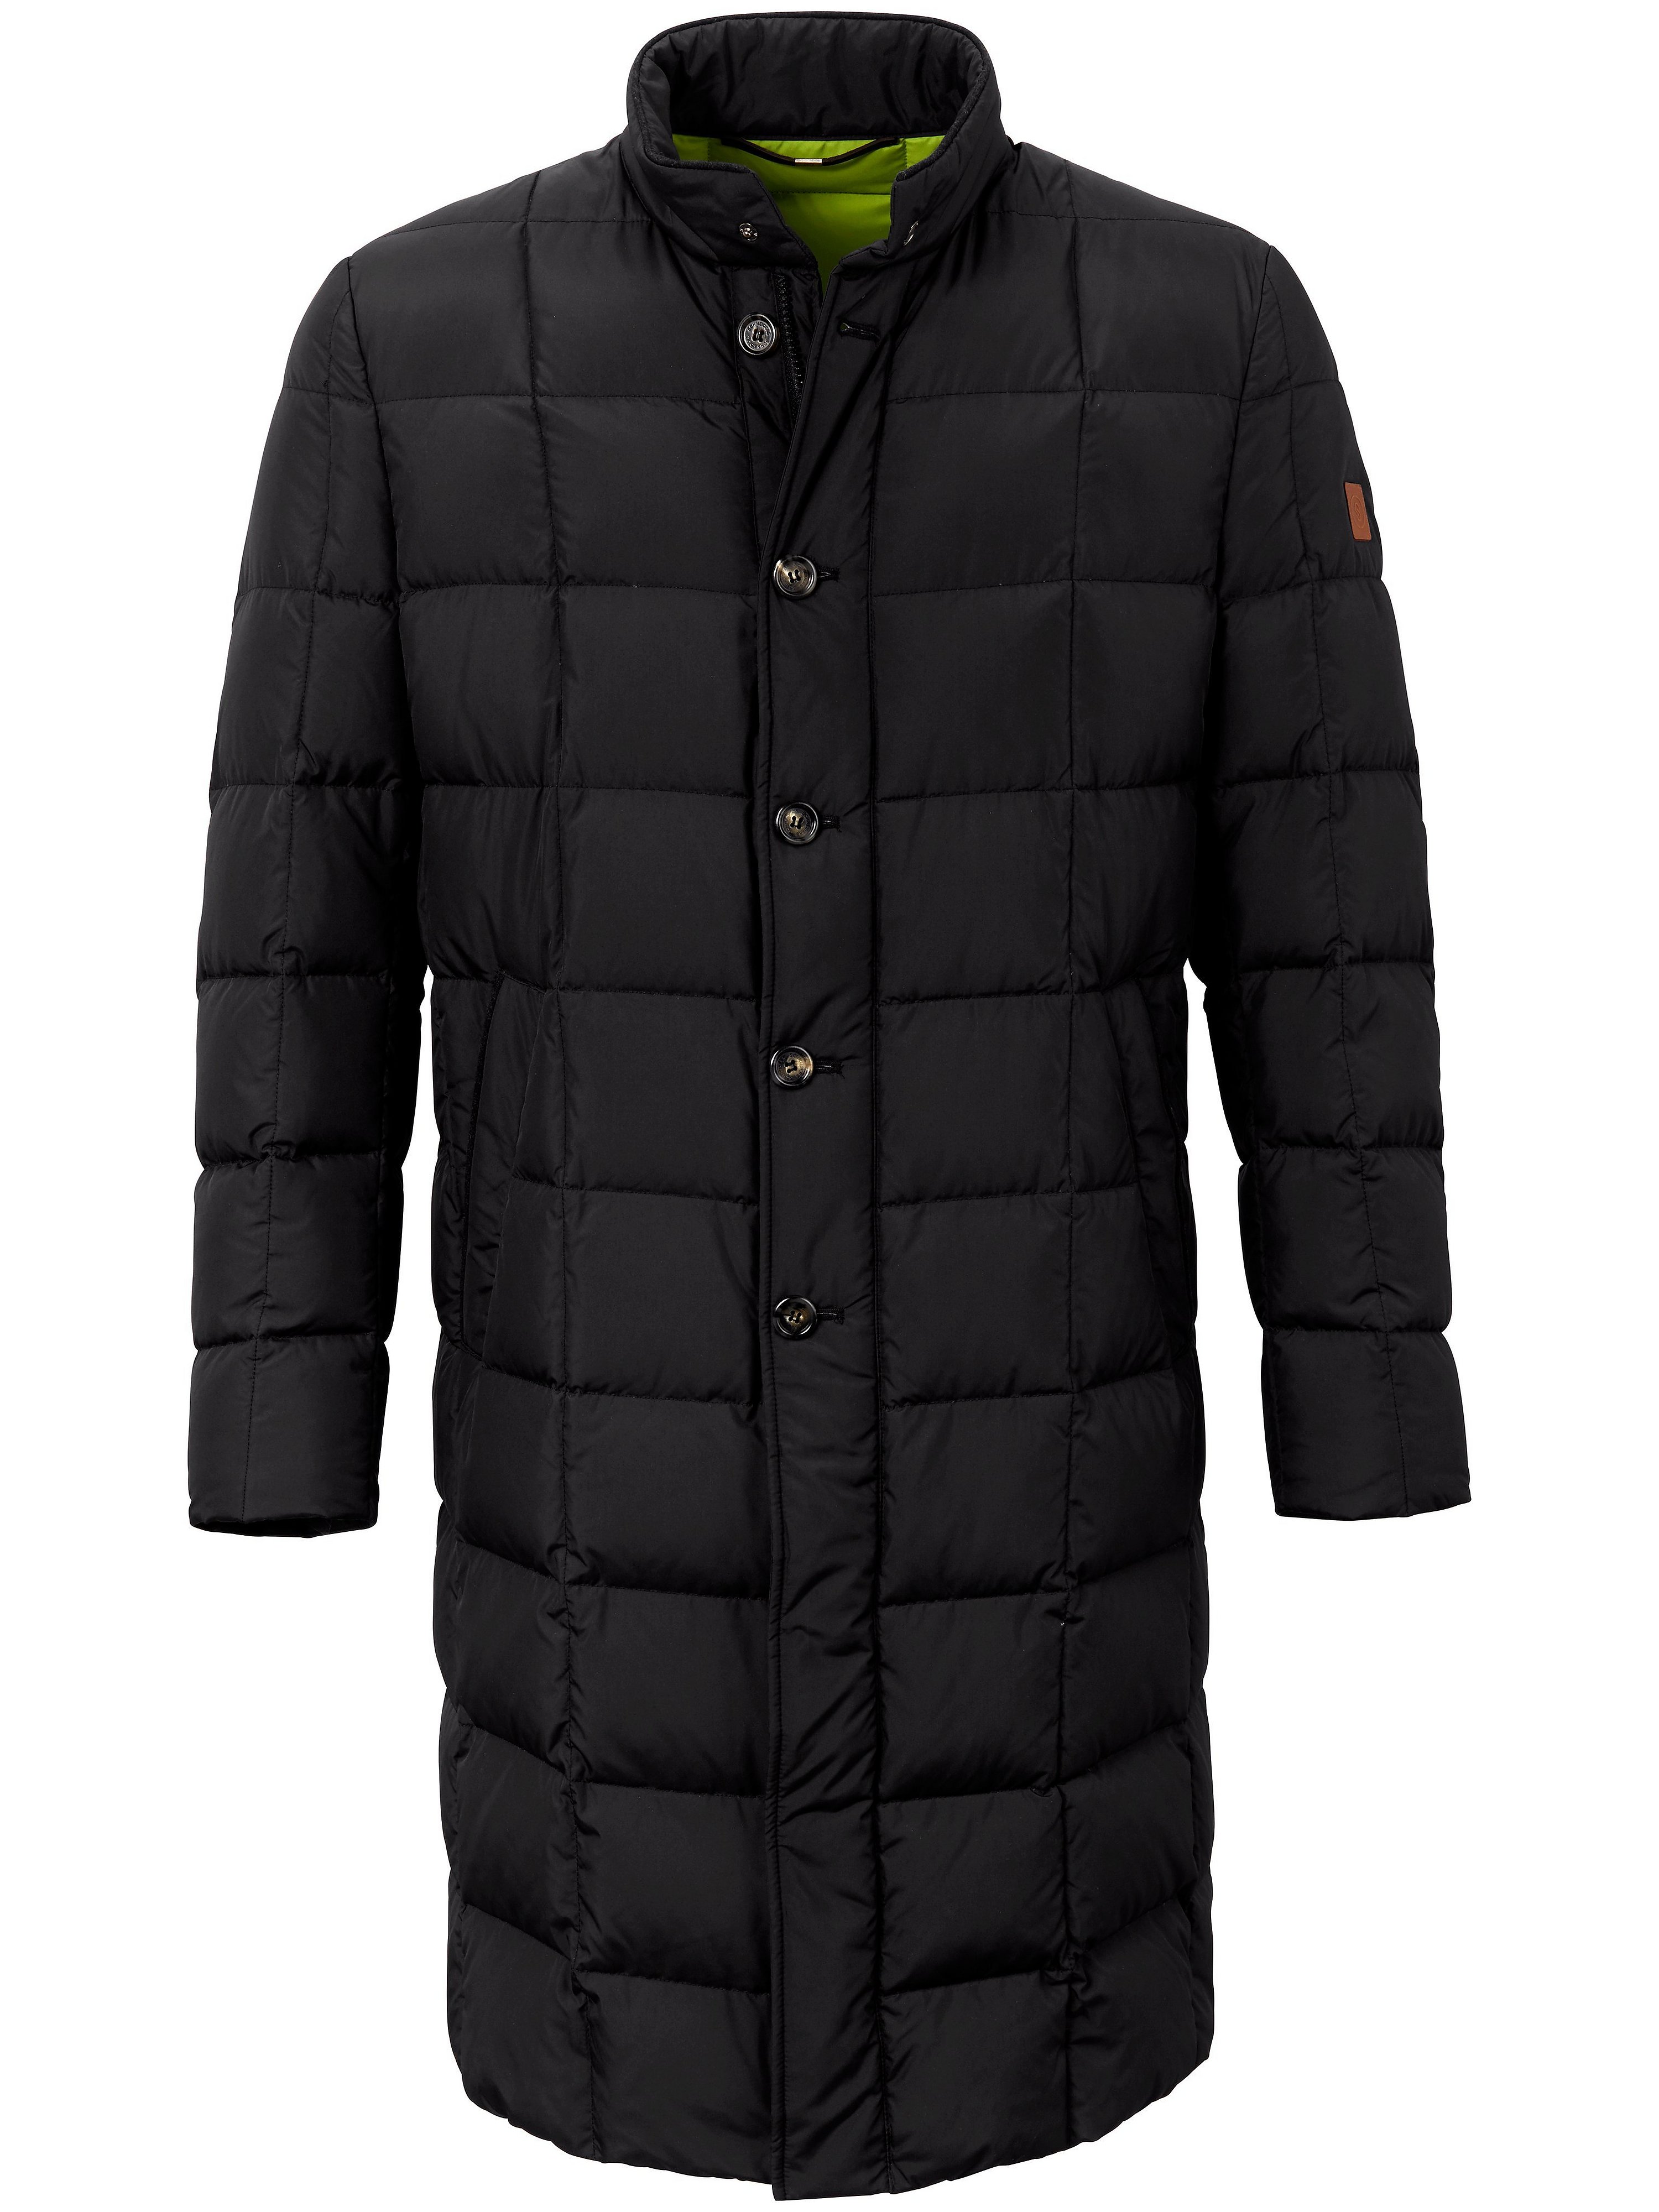 Le manteau  Schneiders Salzburg noir taille 54